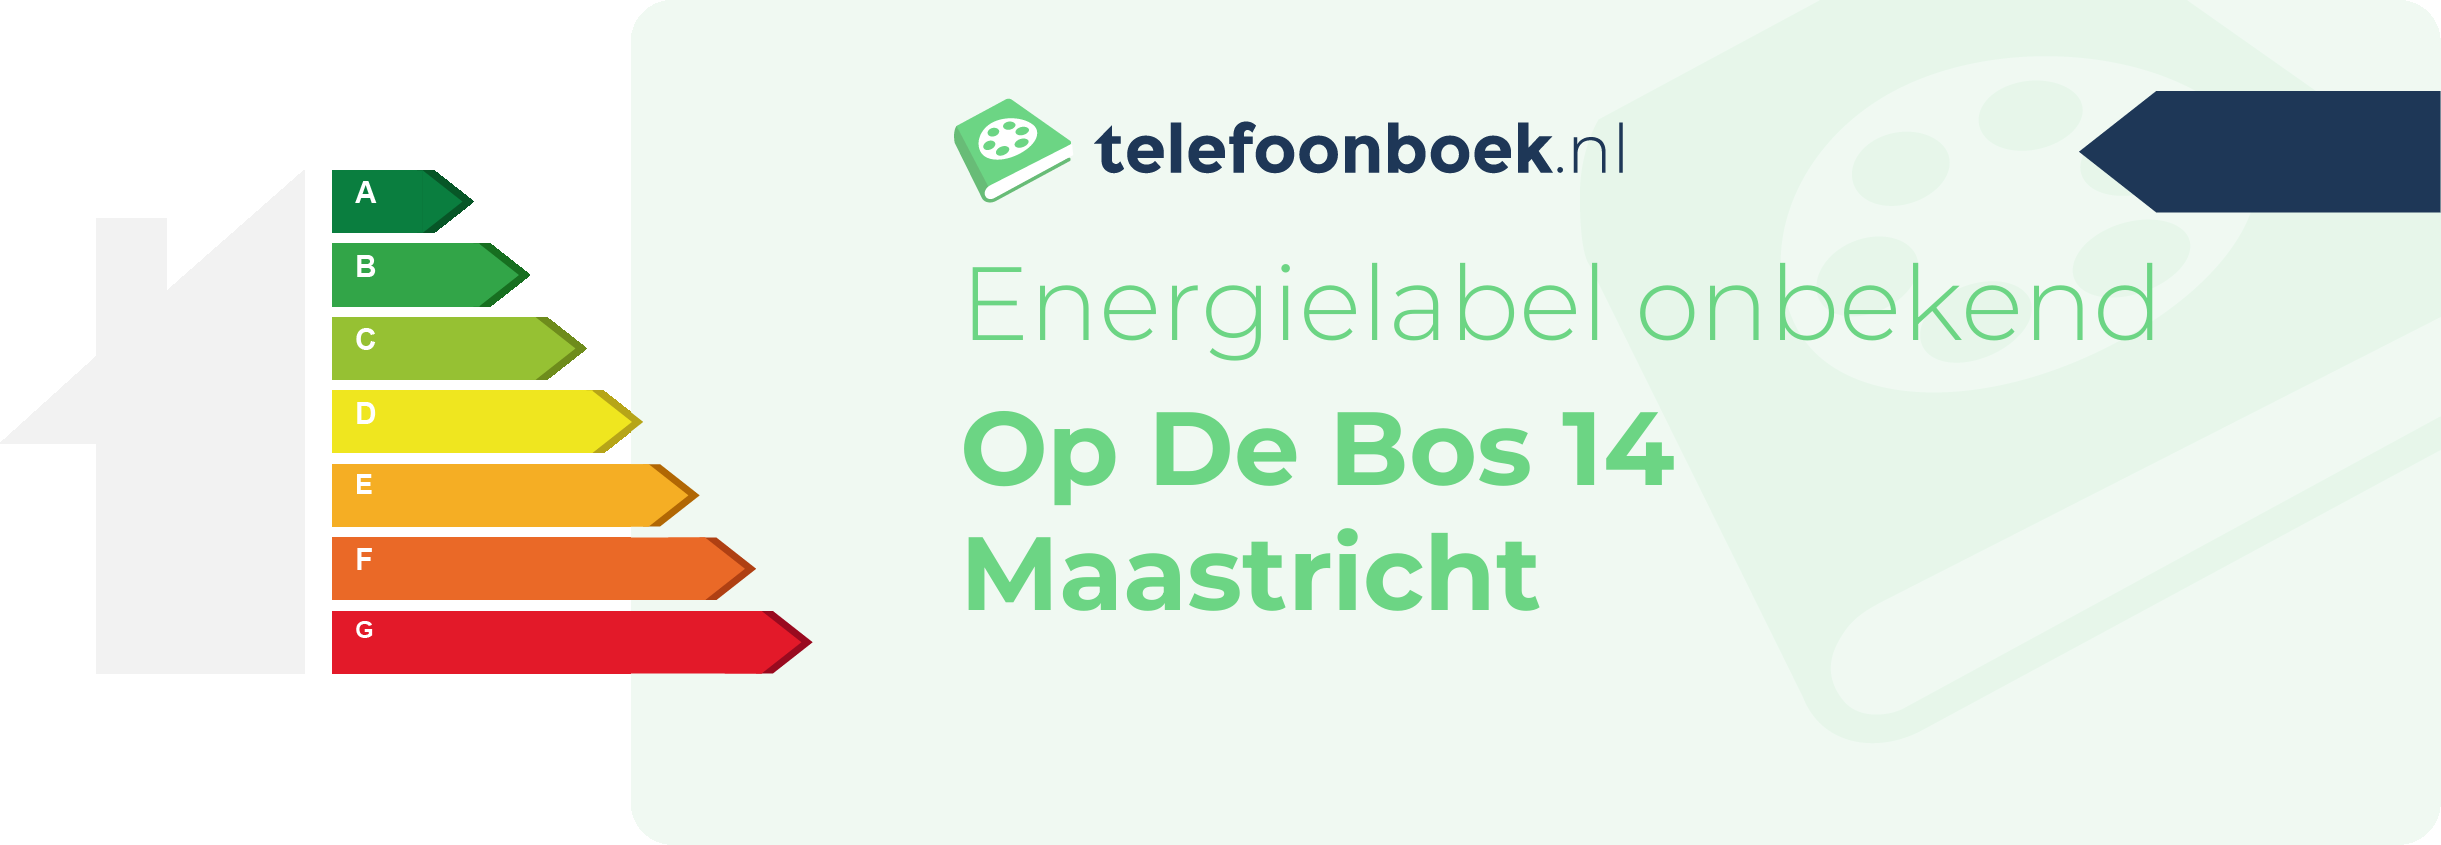 Energielabel Op De Bos 14 Maastricht